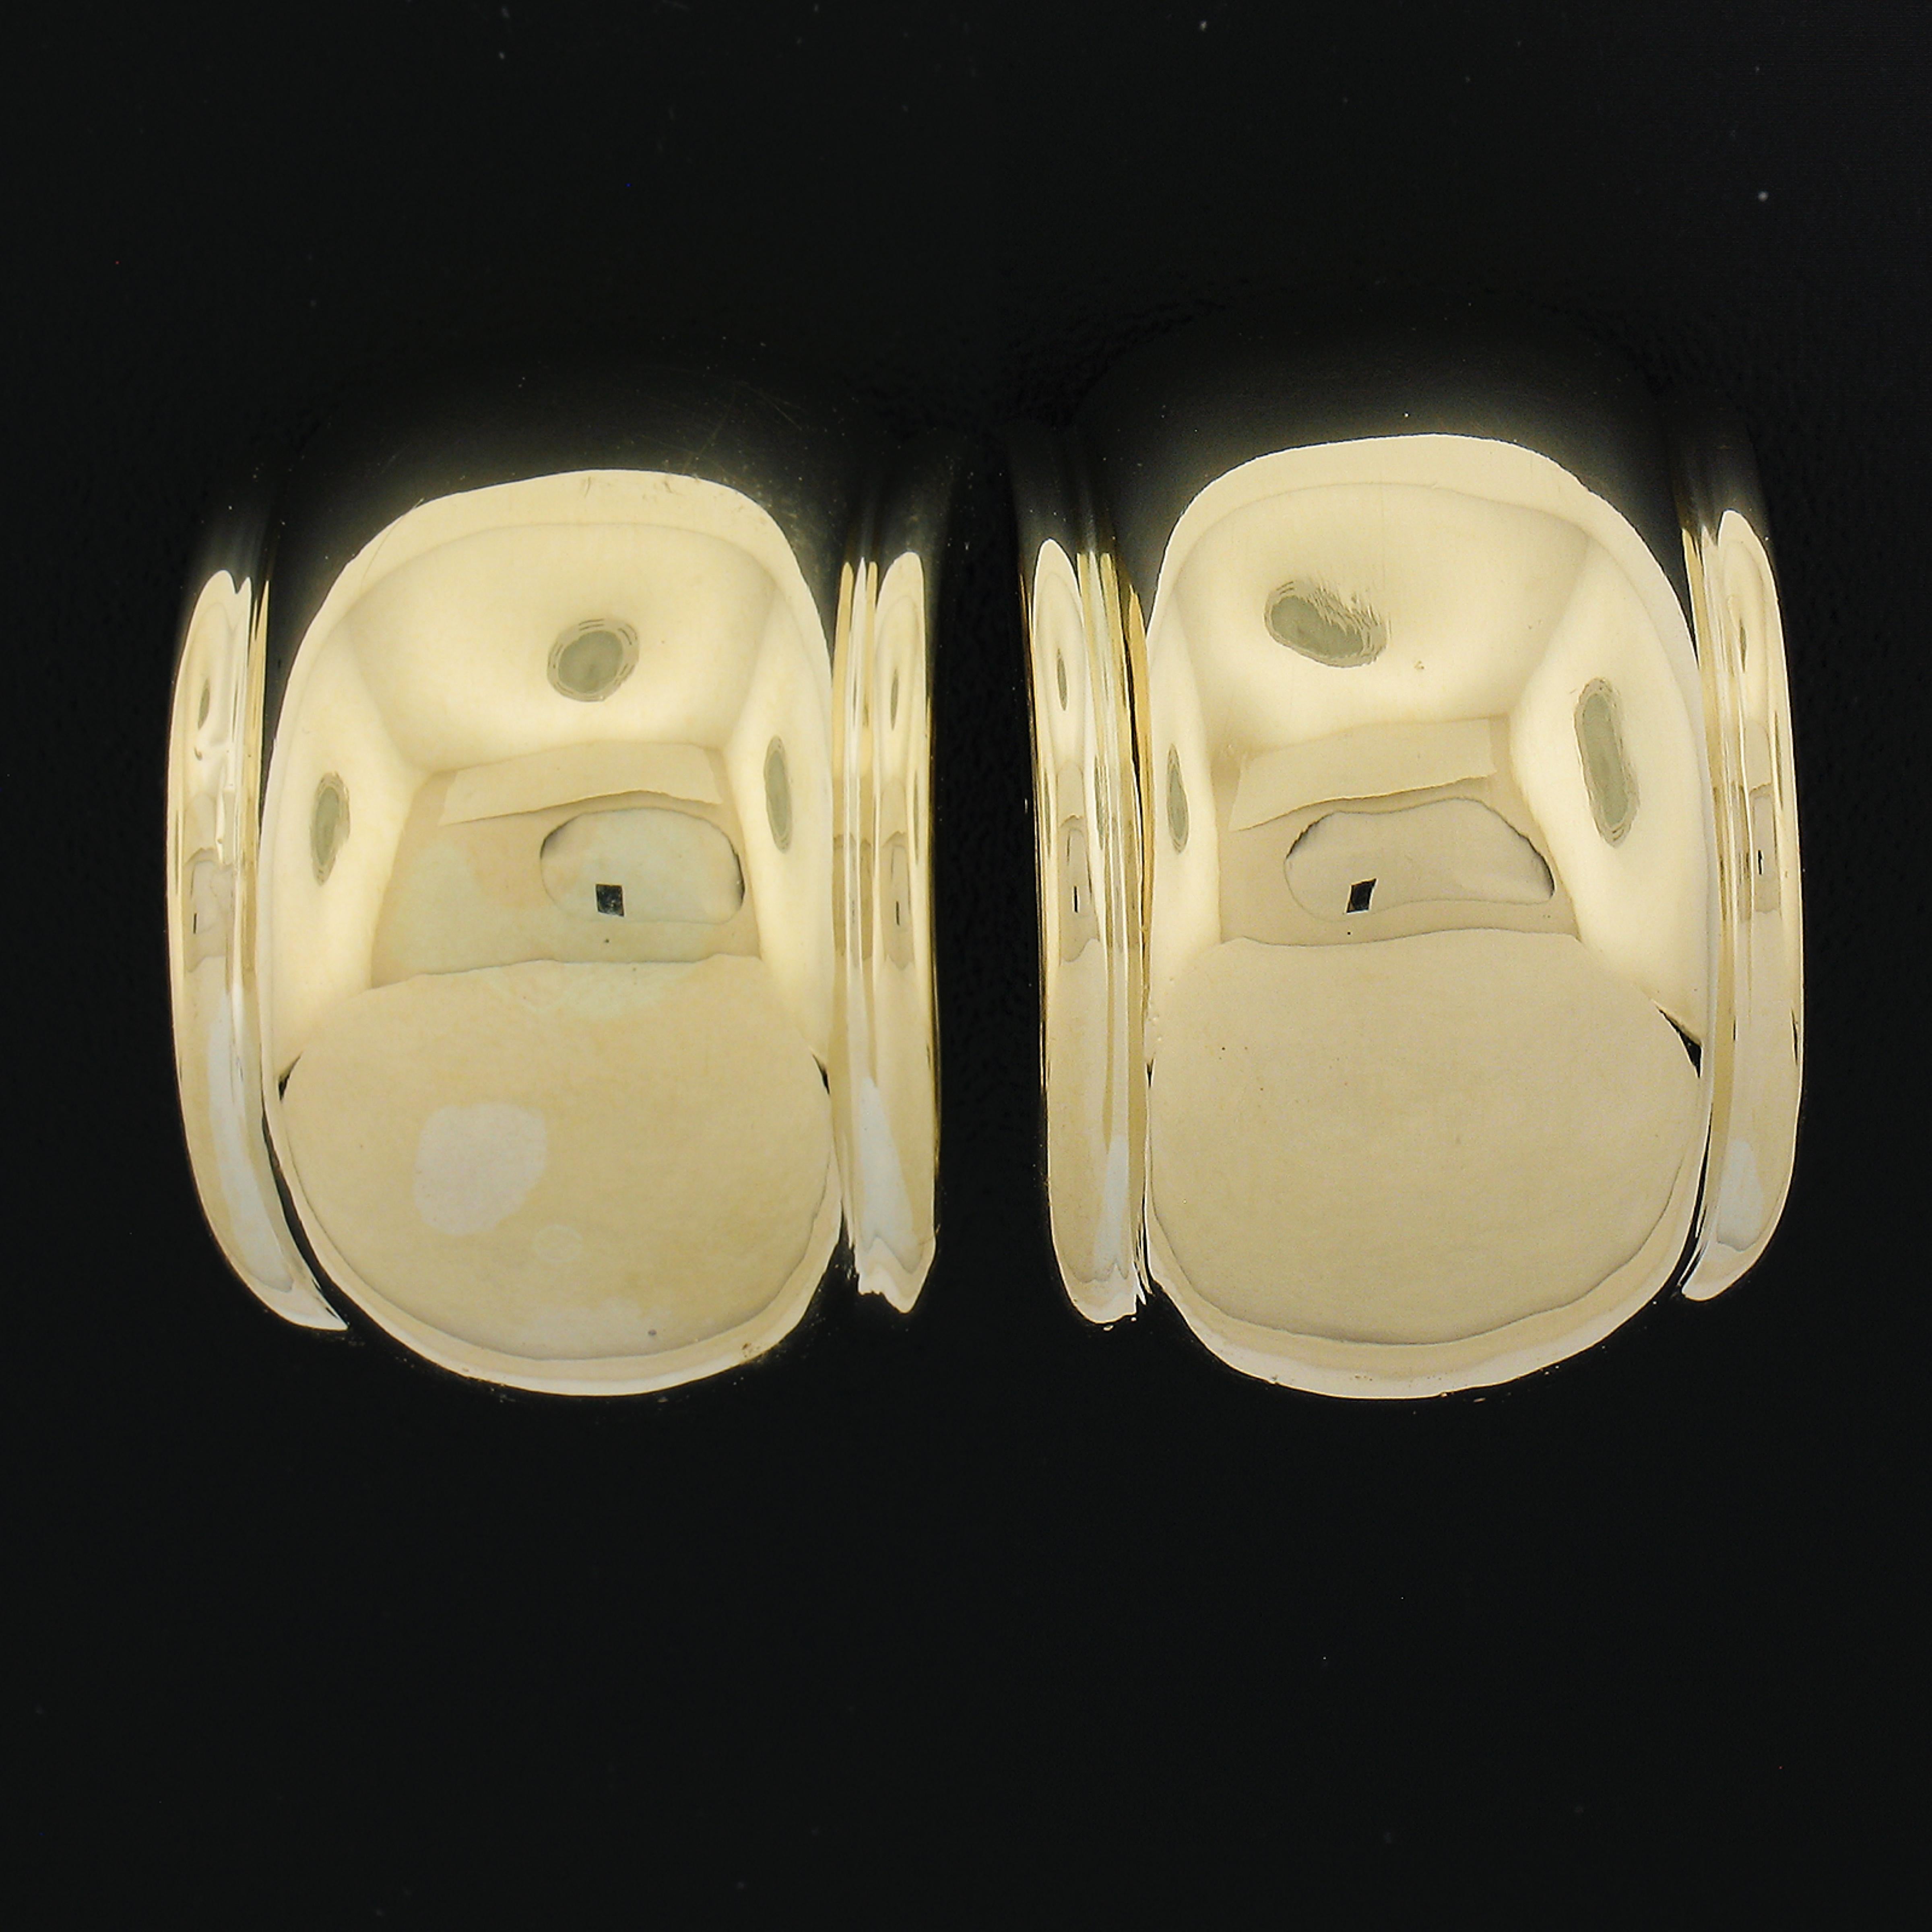 MATERIAL : Or jaune 18 carats massif avec des fonds en or blanc
Poids : 19,35 grammes
Support : Fermetures à clip (les oreilles percées ne sont pas nécessaires).
Largeur : 16,9 mm (0,66